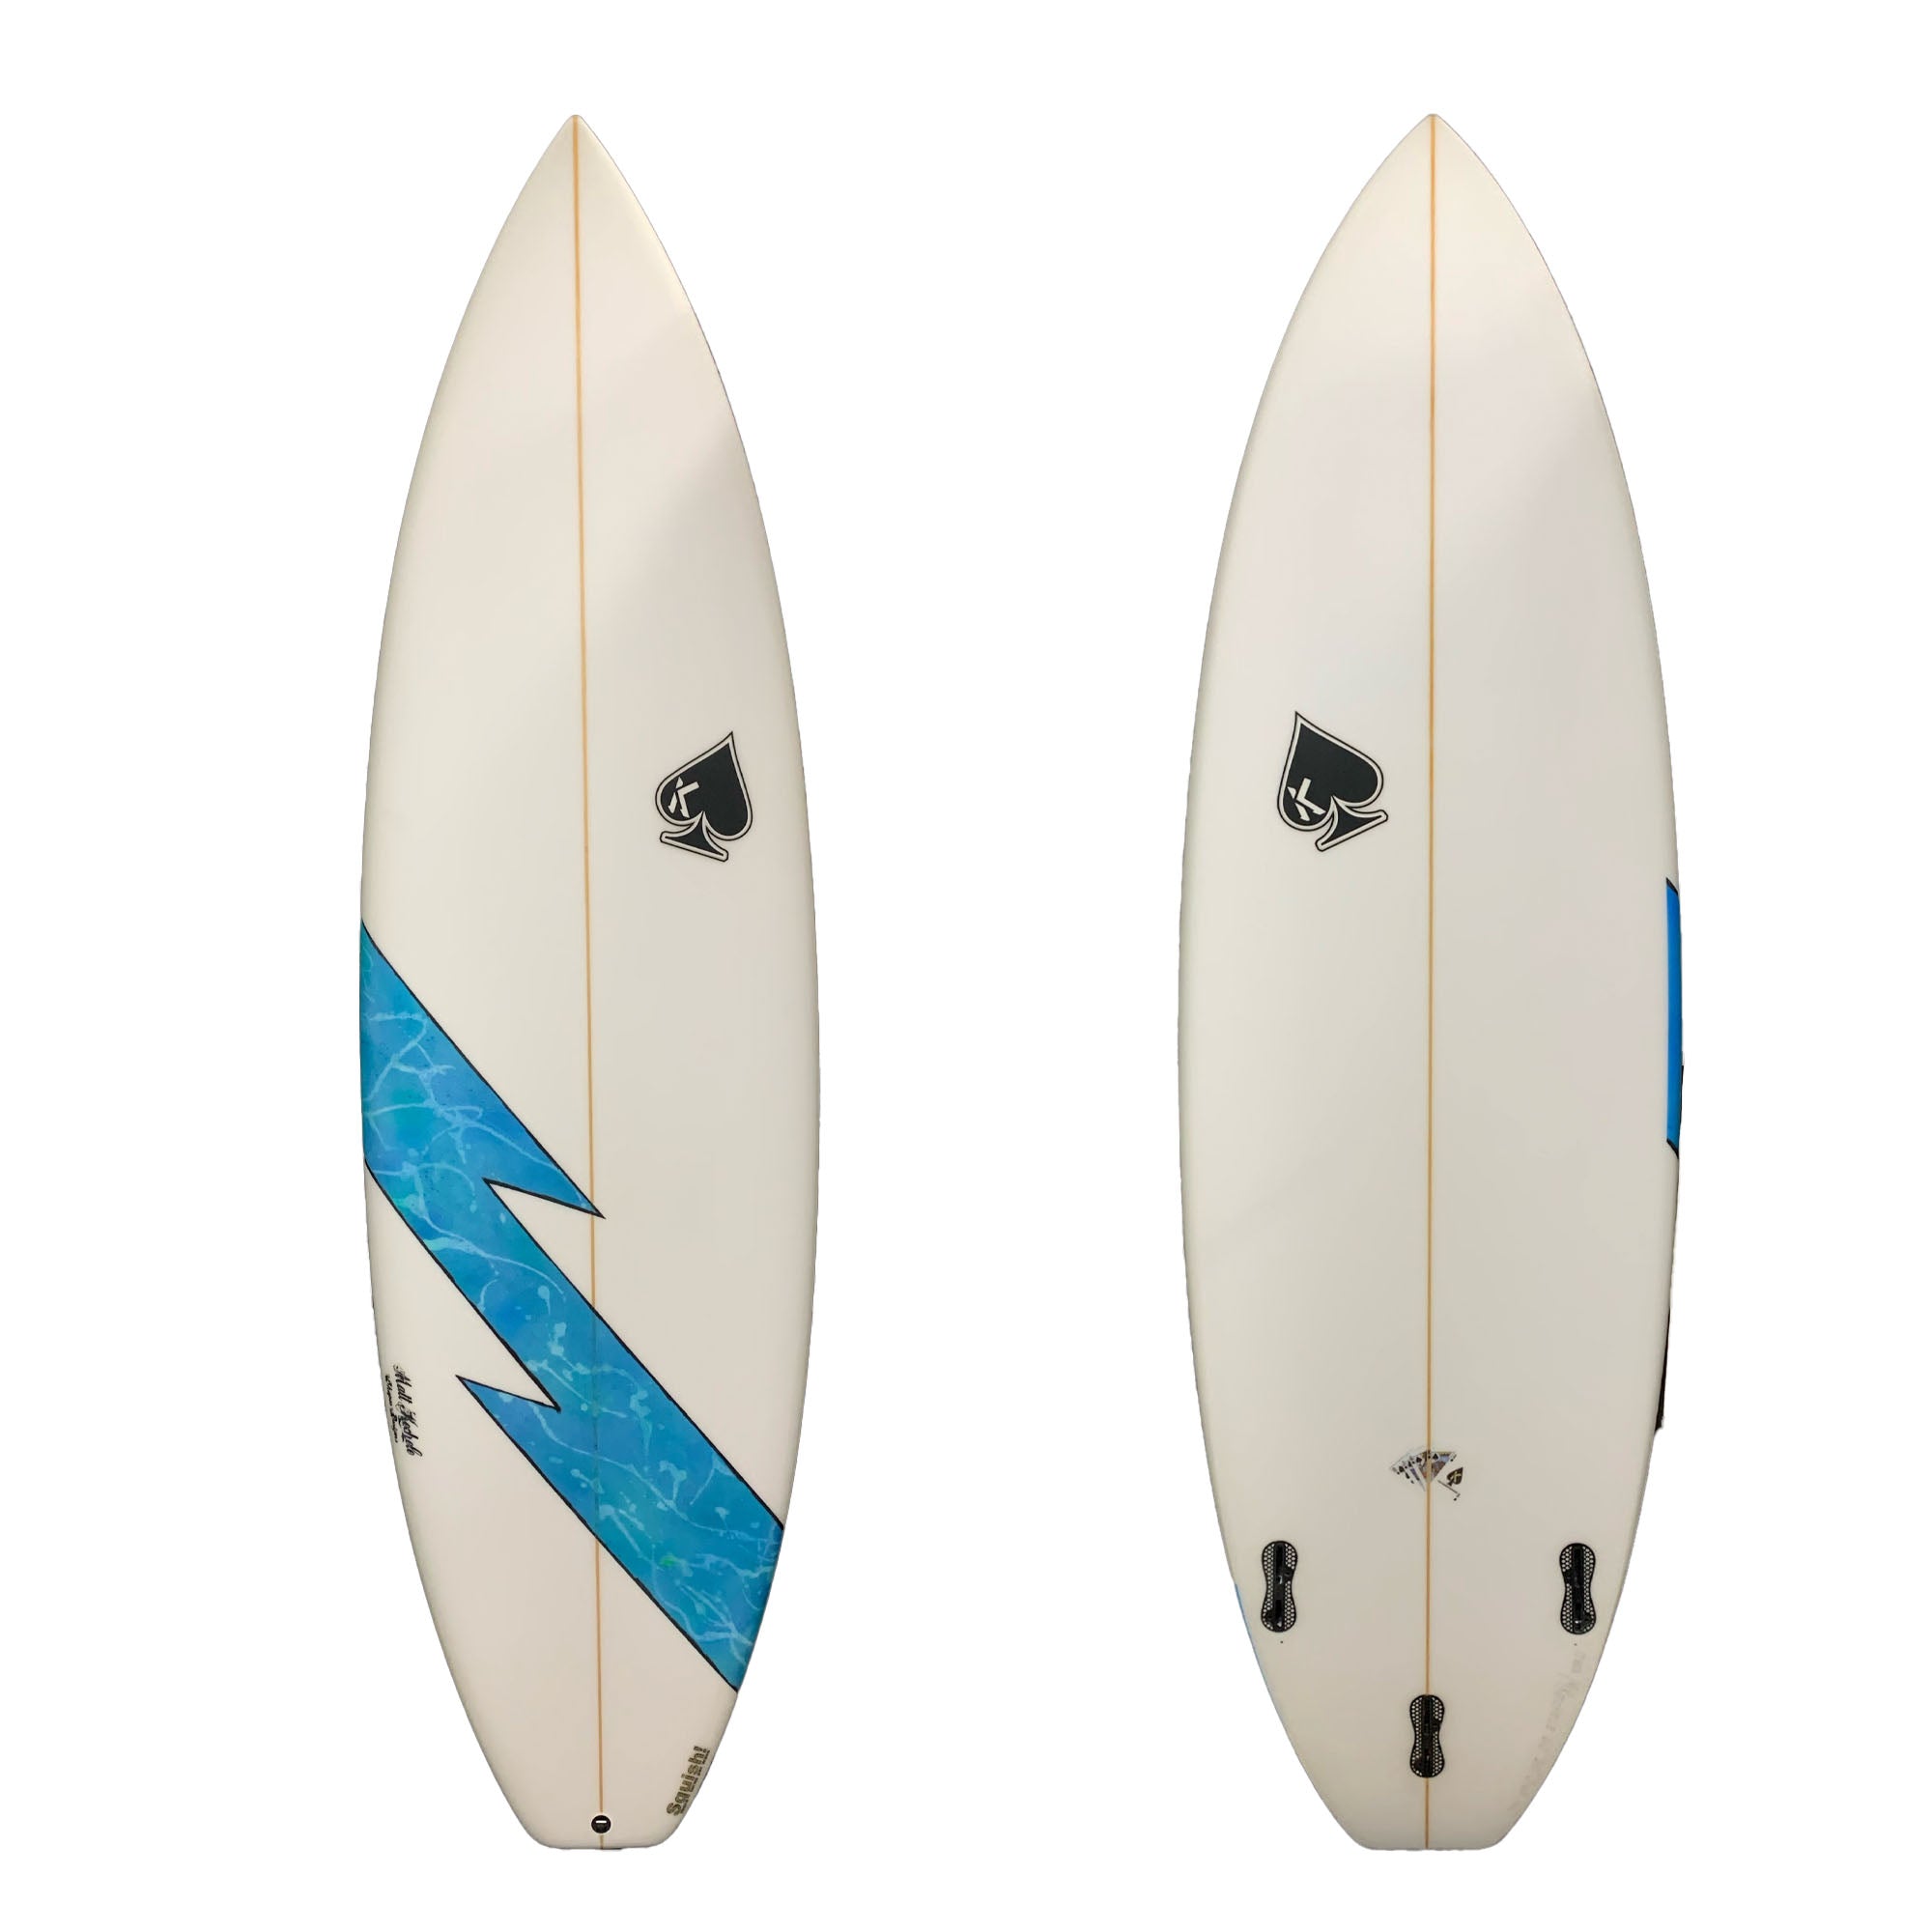 Kechele Squish 6'0 Surfboard - FCS II